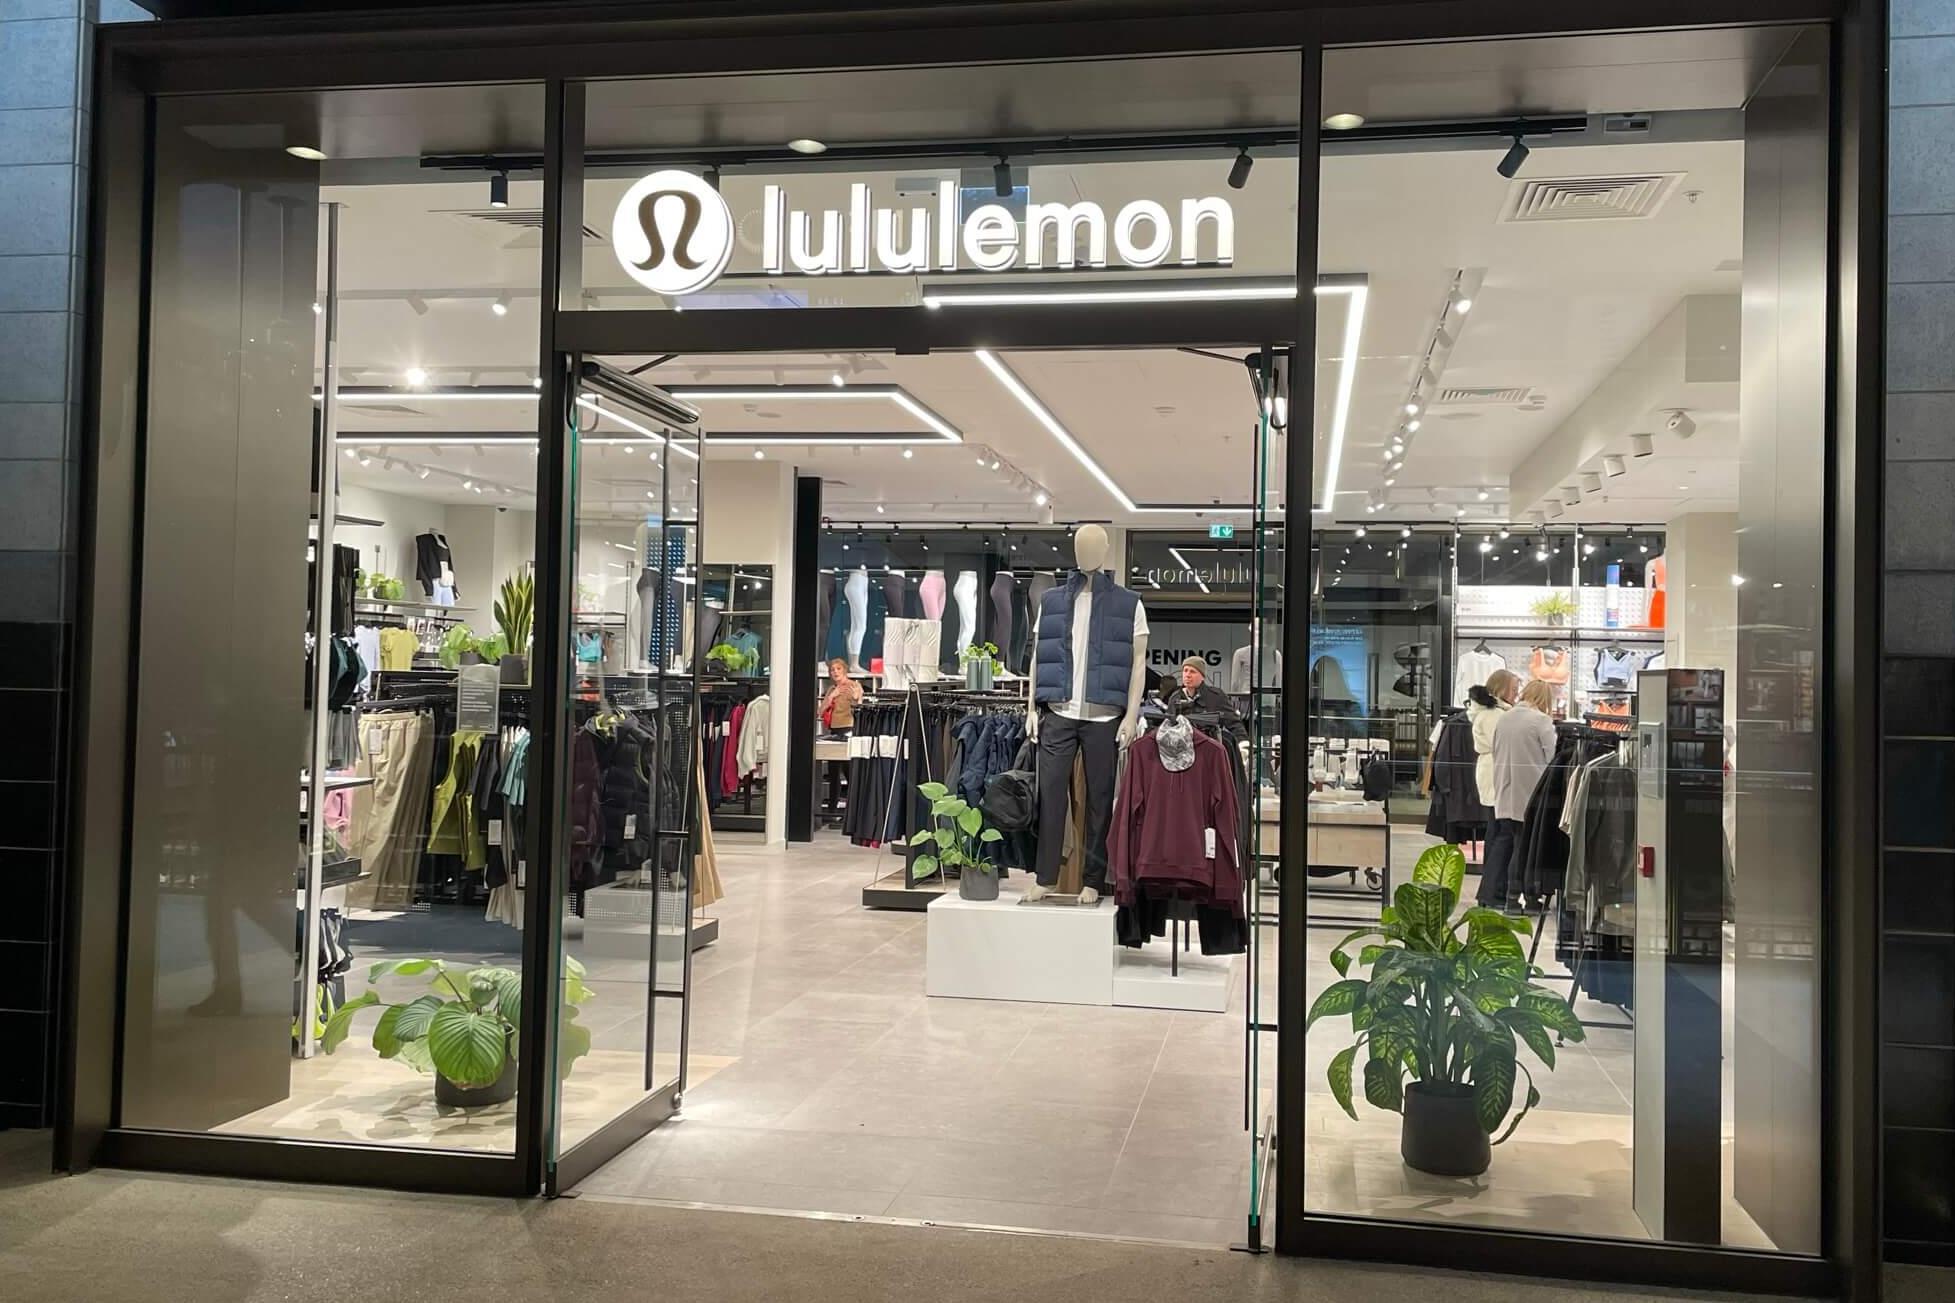 H&M, Lululemon back $250 million Fashion Climate Fund to